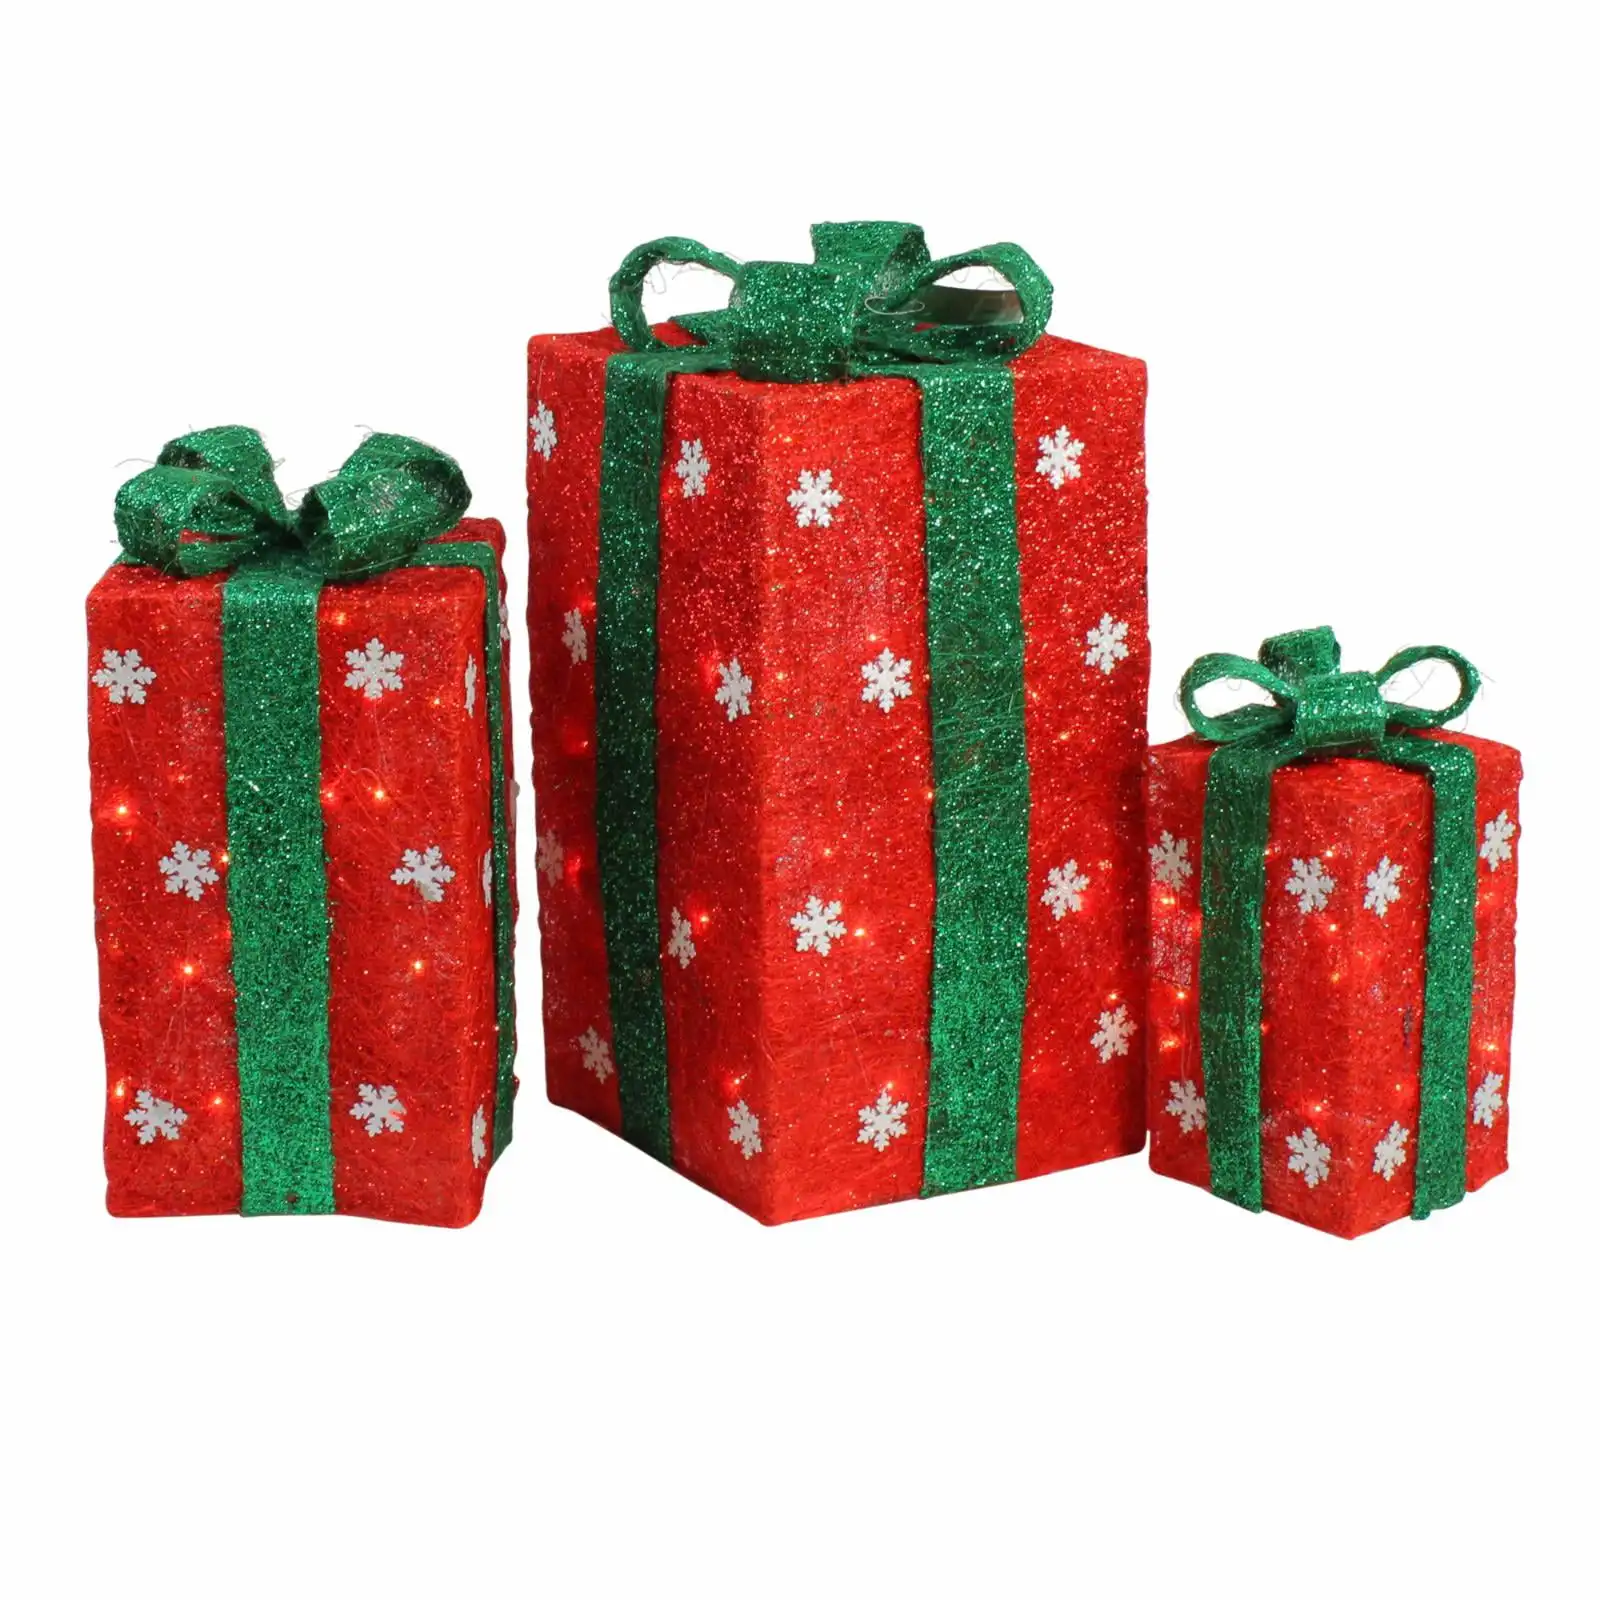 

Northlight набор из 3 подсвеченных высоких красных подарочных коробок с зеленым бантом, рождественские уличные украшения 18 дюймов